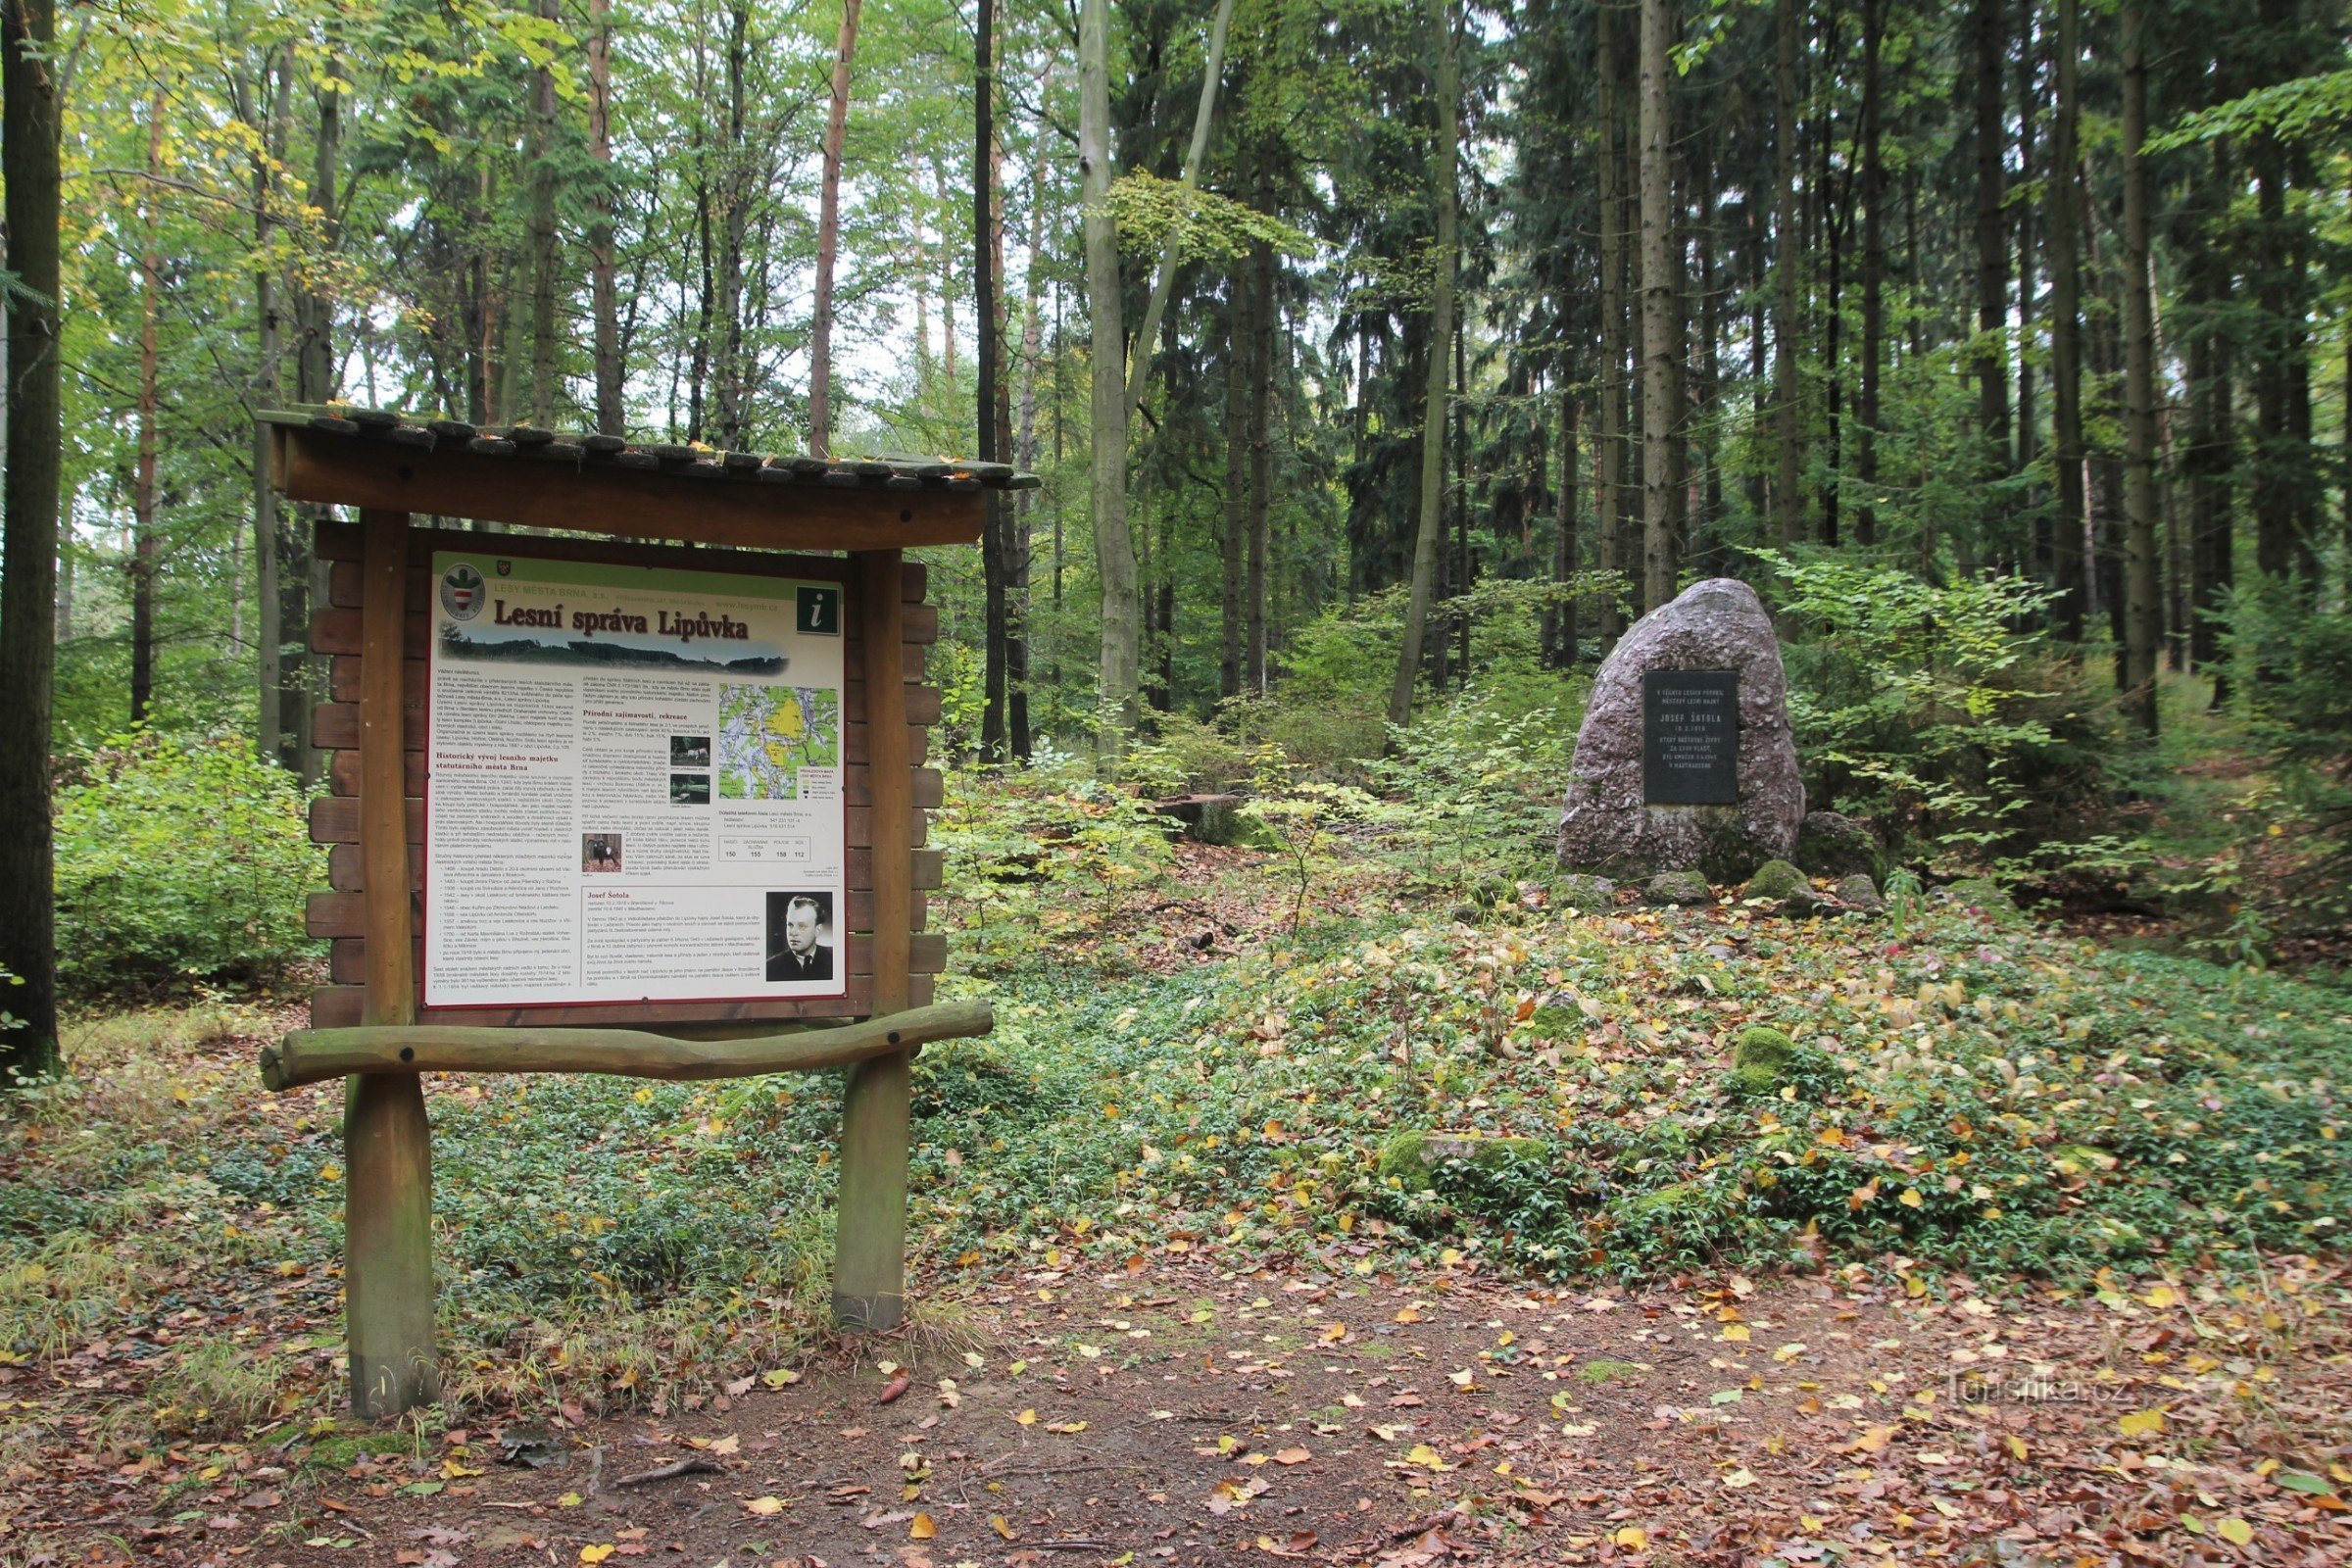 În apropierea monumentului există și un panou informativ